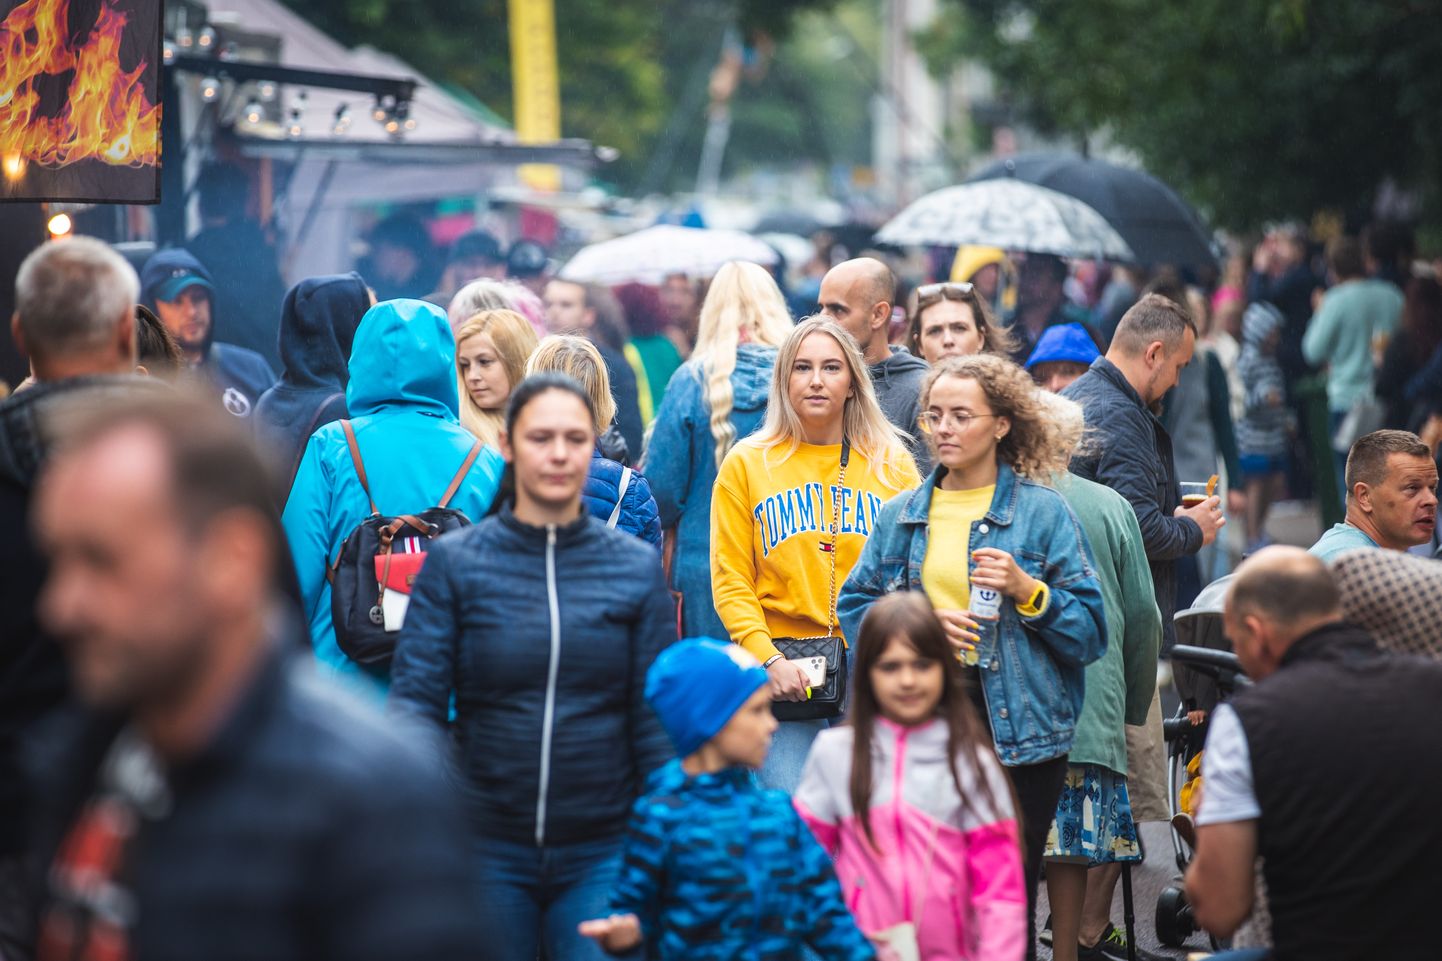 Hiljutises seireuuringus selgus haigustunnusteta või väga kergete sümptomitega nakatunuid, kes ei olnud nakkusest ise teadlikud. Üleriigiline seire annab võimaluse hinnata, kas koroonaviiruse varjatud levik võib olla laiem. Illustratiivselt pildil rahvas Uue Maailma Tänavafestivalil 6. septembril 2020 Tallinnas.